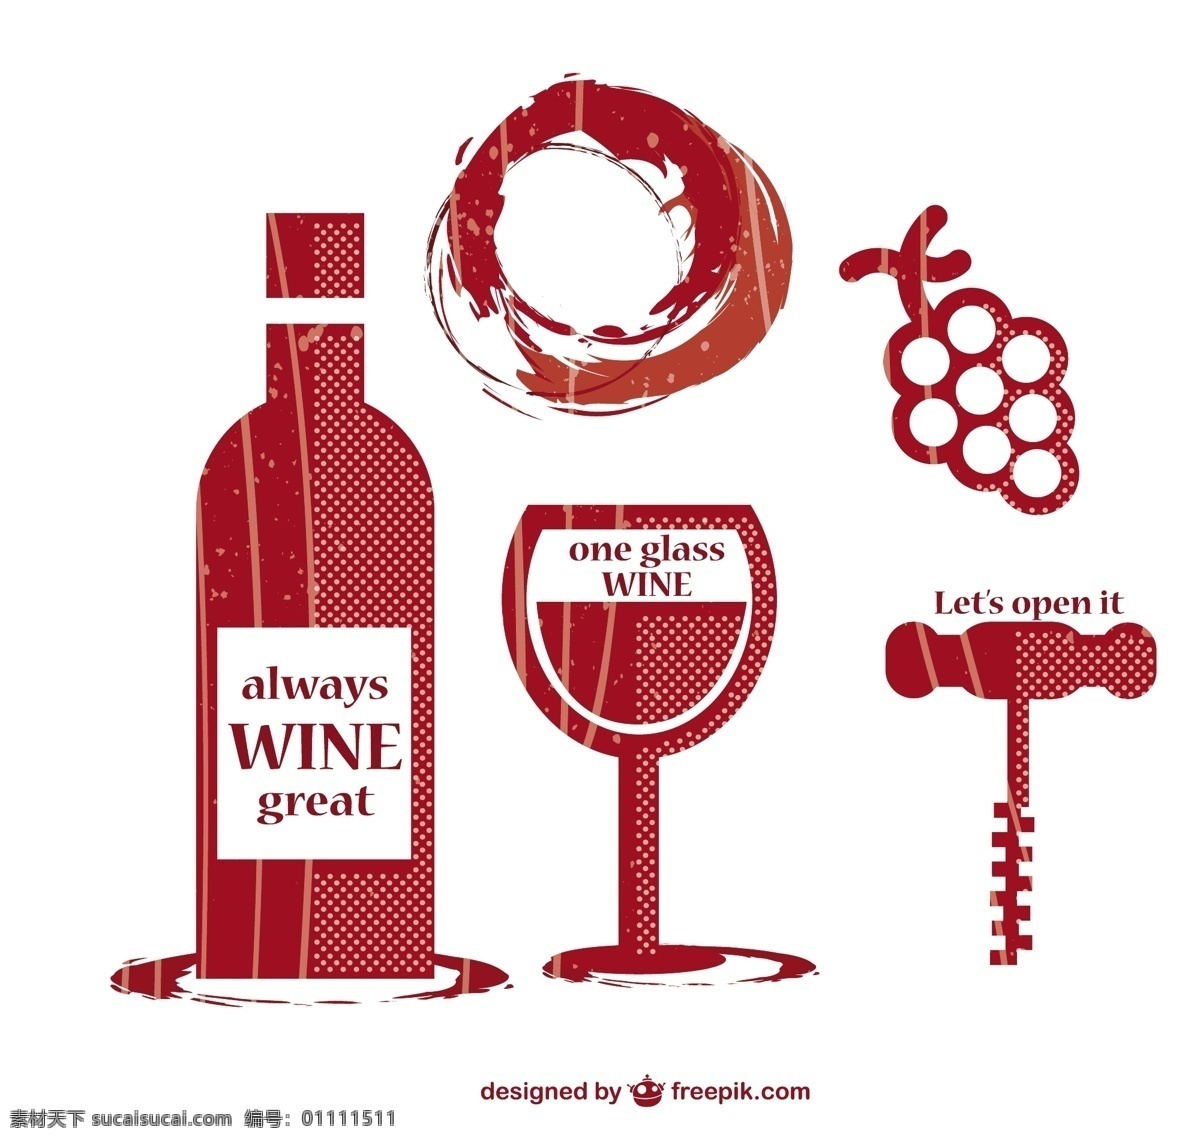 复古 酒 图形 元素 集 葡萄酒 模板 瓶 玻璃 饮料 图形设计 绘画 葡萄 插图 设计元素 酒精 符号 葡萄酒杯 葡萄酒瓶 白色